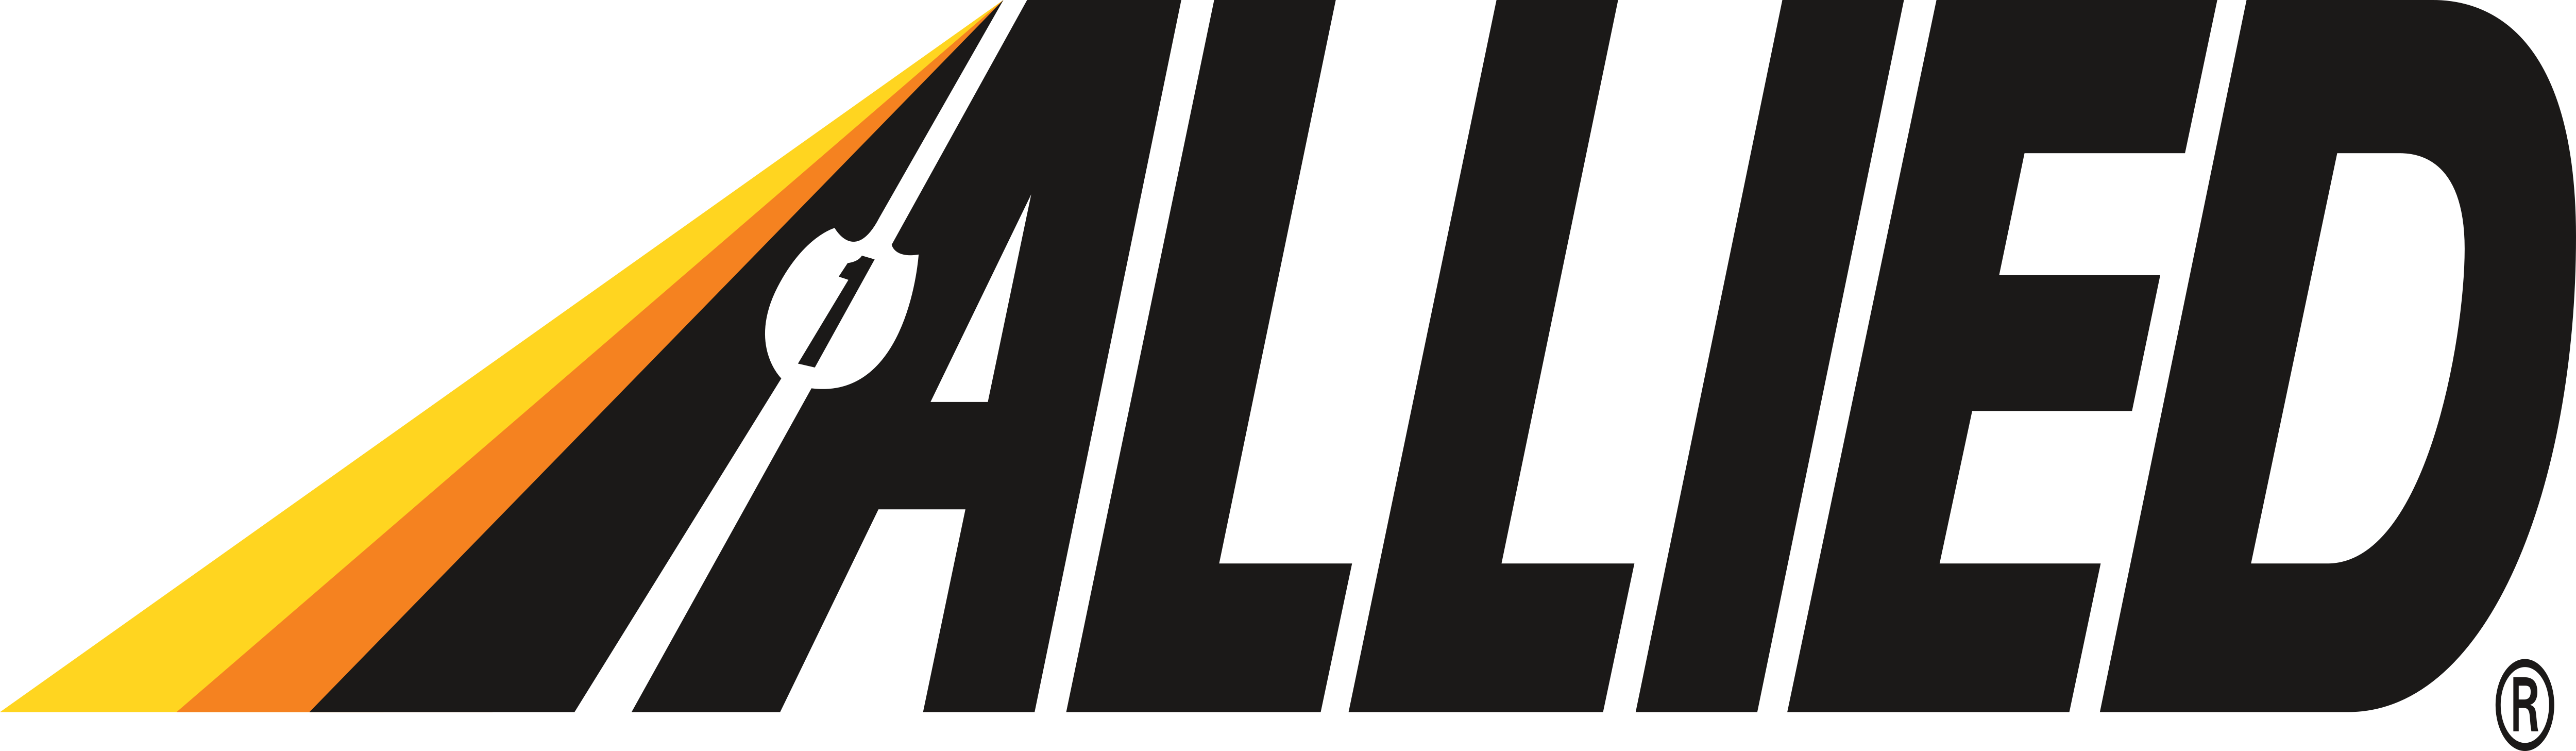 Allied Van Lines – Logos Download